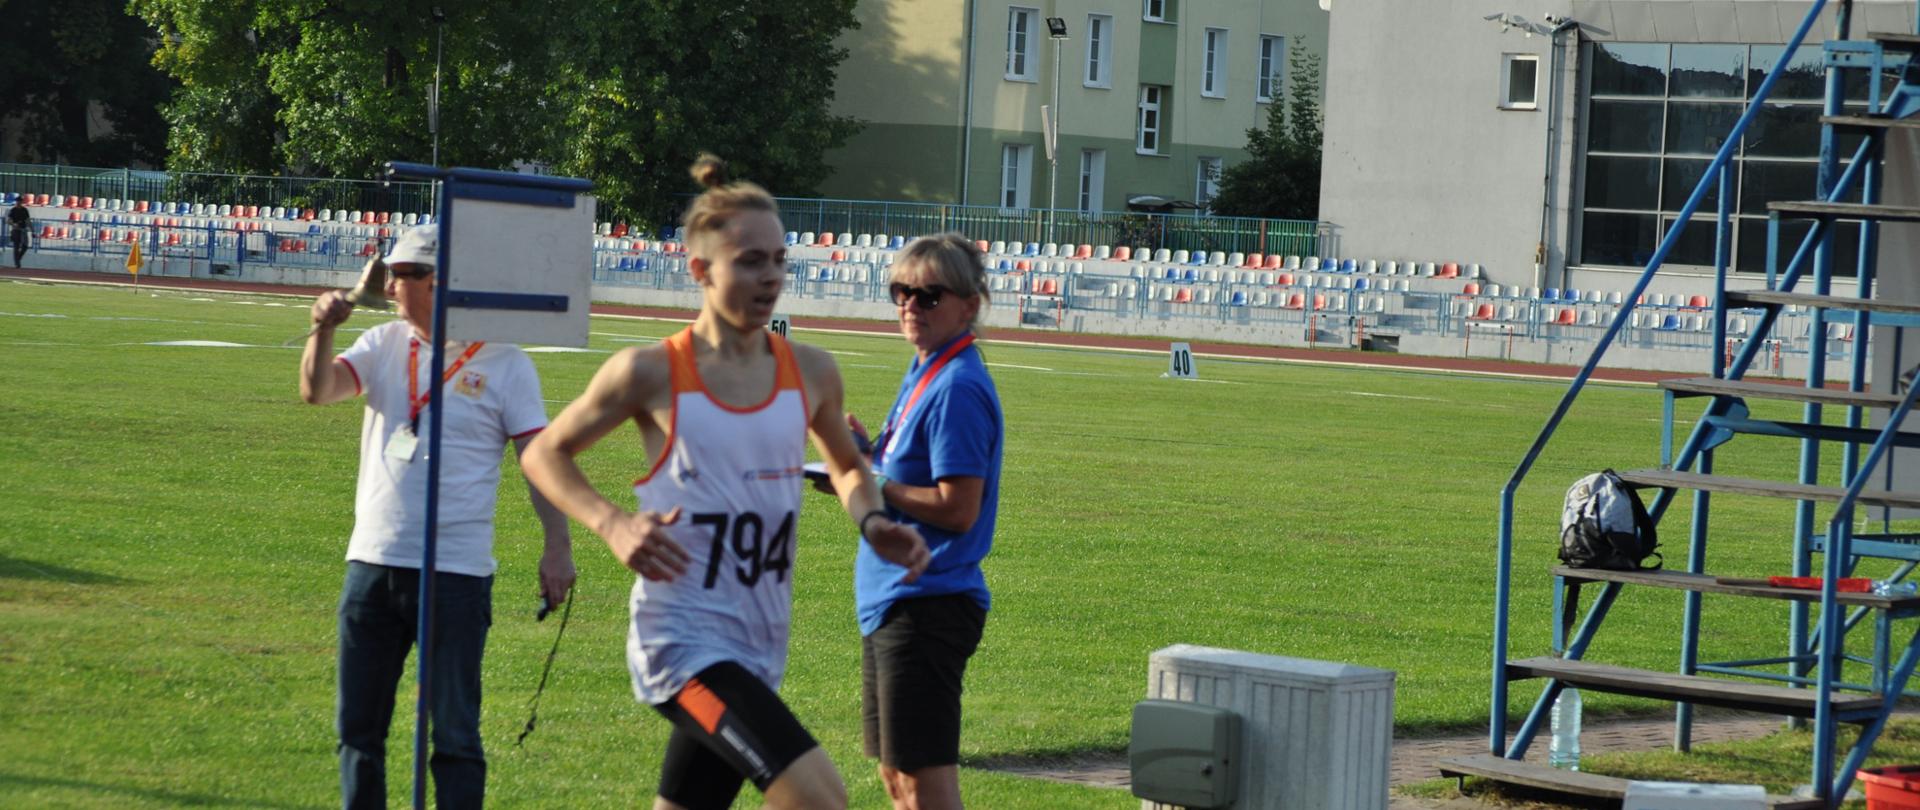 Aleksander Dziemiańczyk podczas biegu